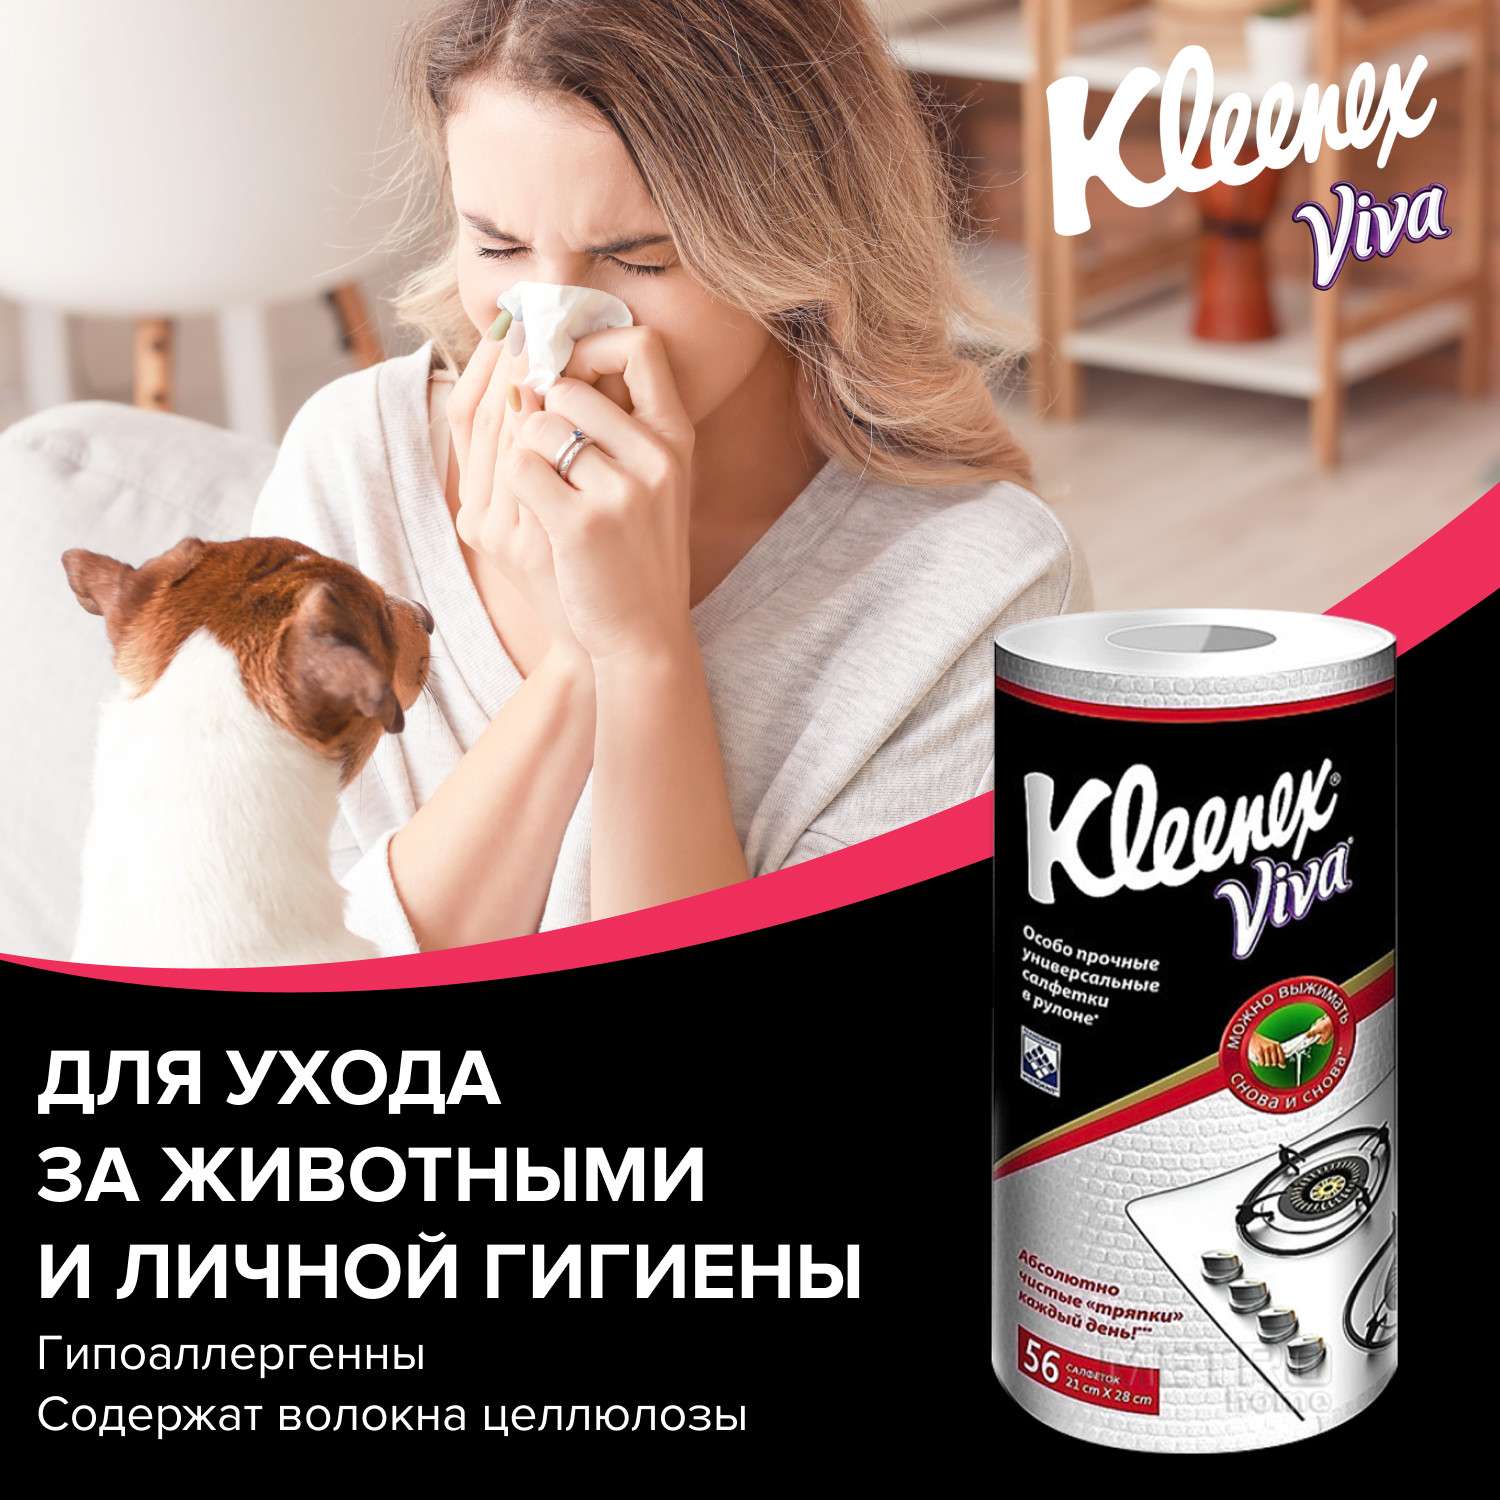 Тряпки Kleenex Viva универсальные в рулоне - фото 12